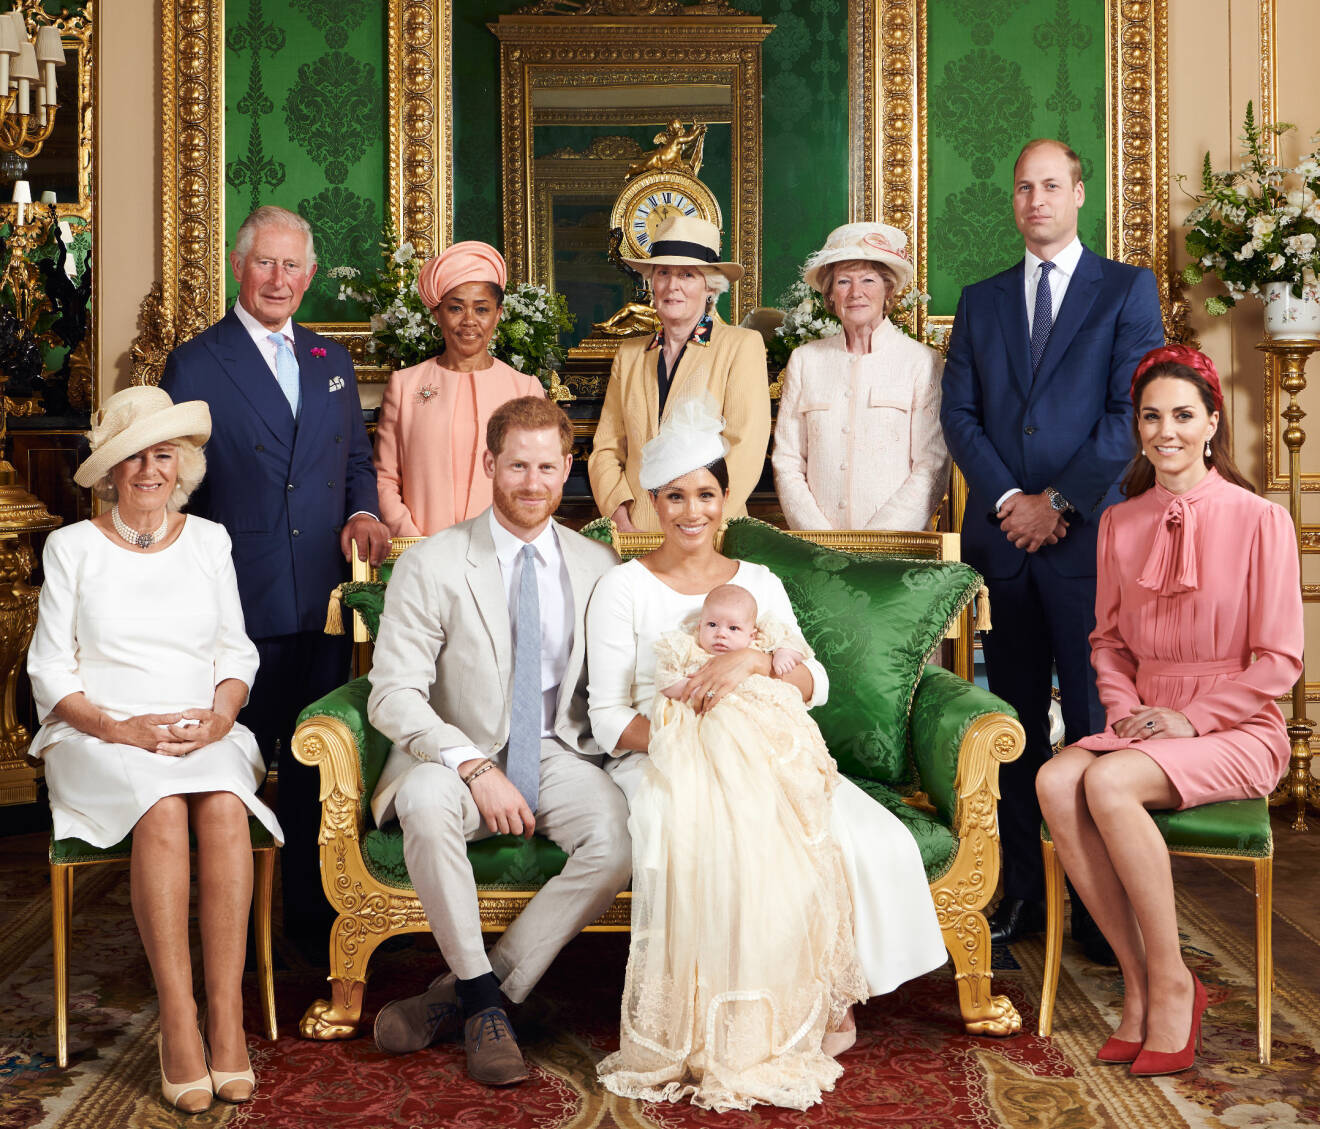 Brittiska kungafamiljen Archies dop 2019. I mitten prinsessan Dianas systrar Sarah och Jane.